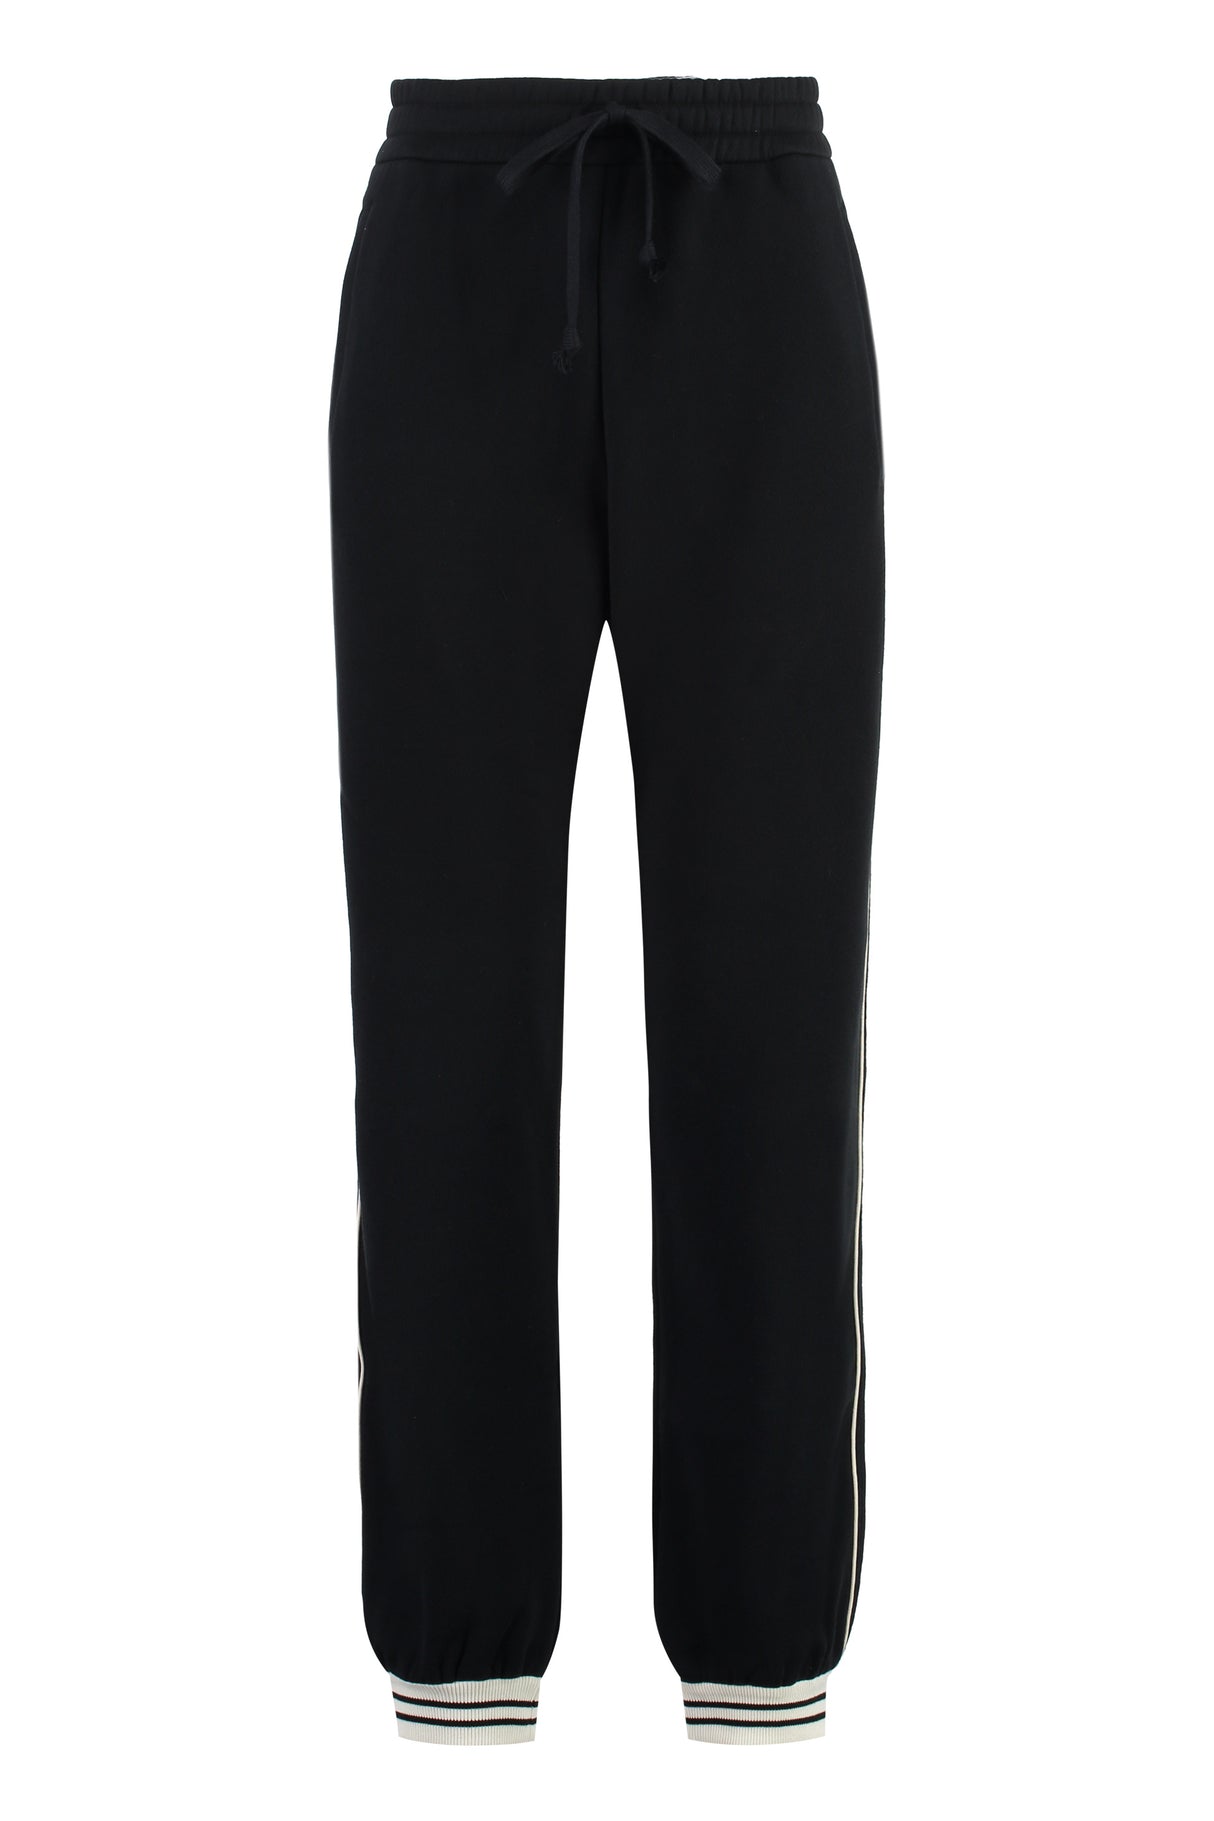 Áo track-pants cotton đen dành cho nữ FW23